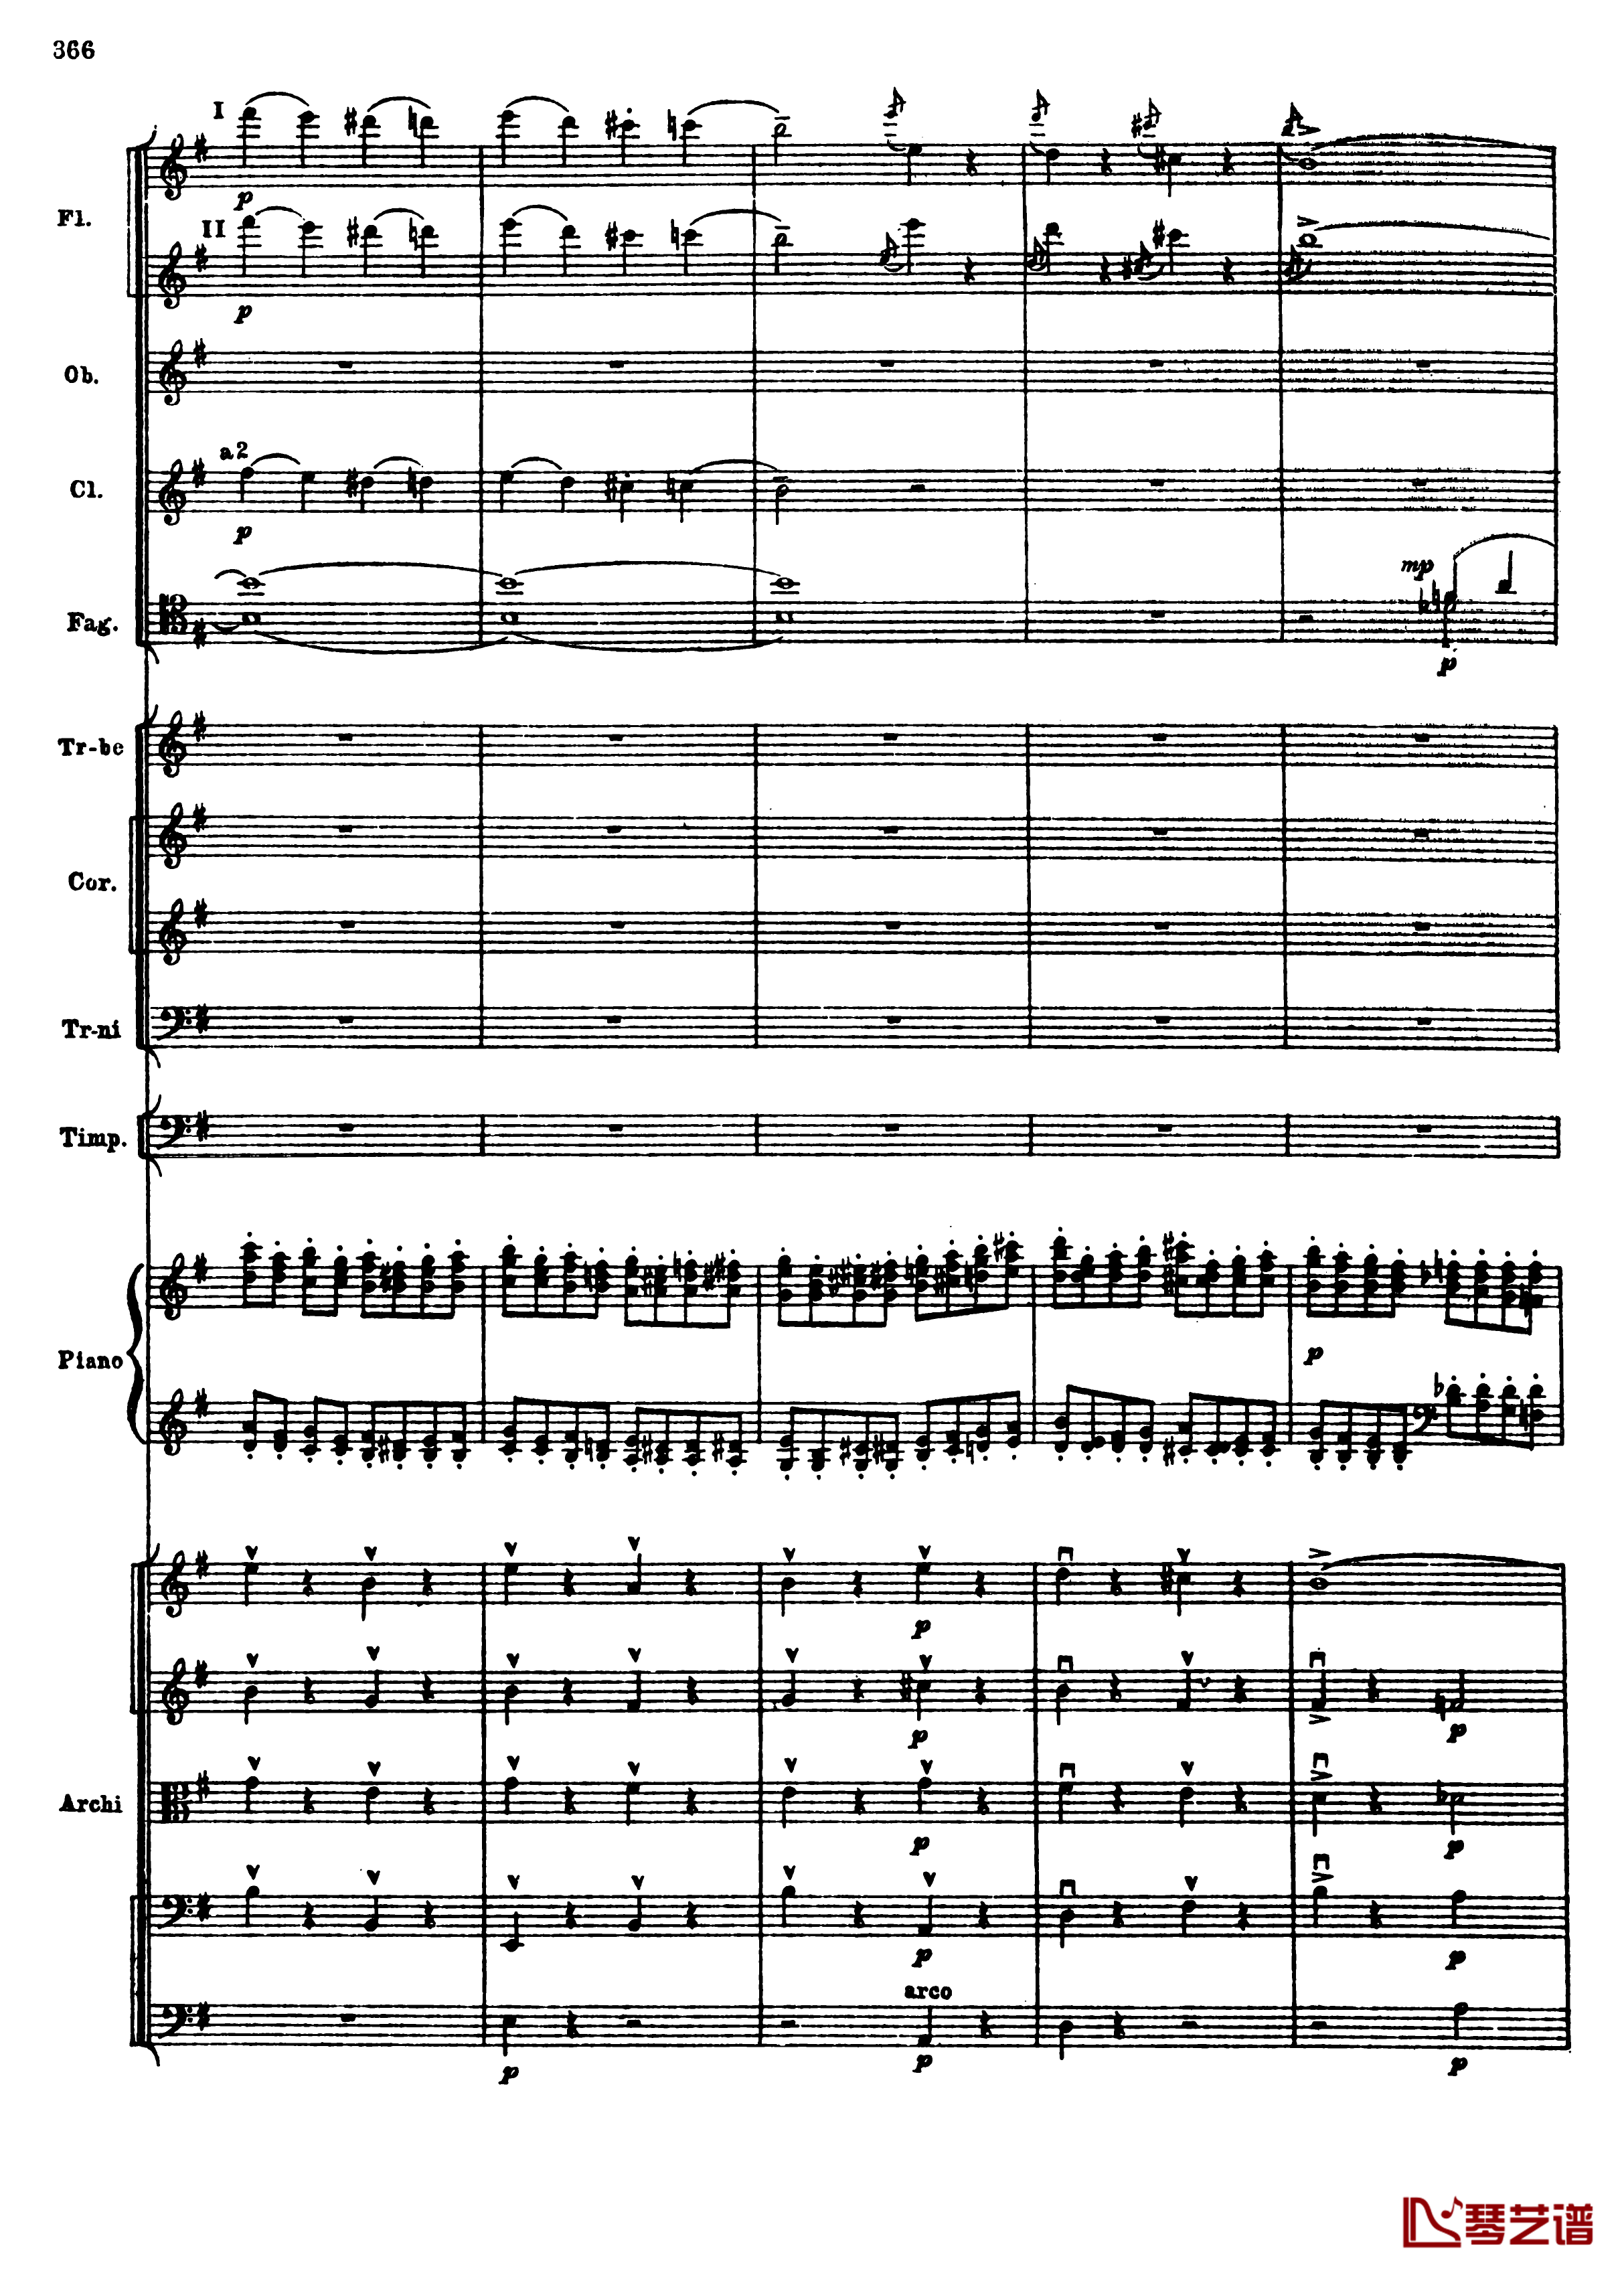 普罗科菲耶夫第三钢琴协奏曲钢琴谱-总谱-普罗科非耶夫98